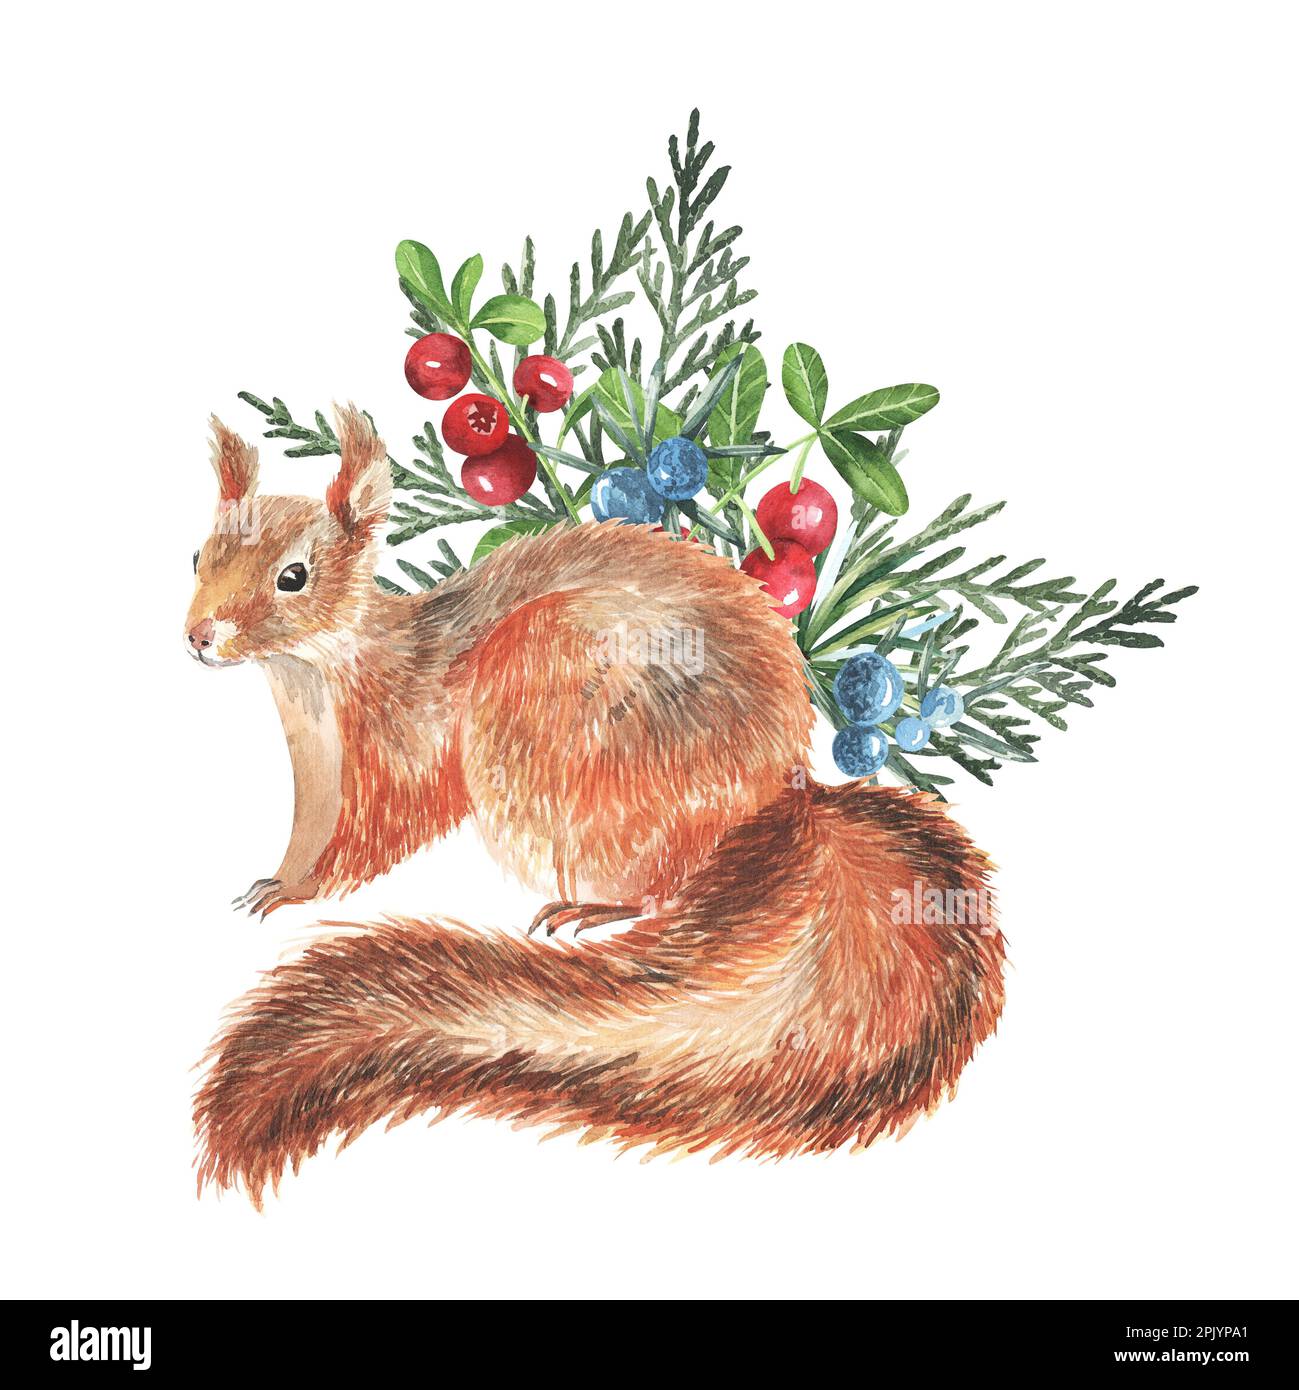 Wildtiere im Herbstwald – Farbpalette. Handgezeichnetes Eichhörnchen mit Cowberry, grünen Thuja-Blättern. Realistisches Naturelement. Lustige Tierwälder Stockfoto